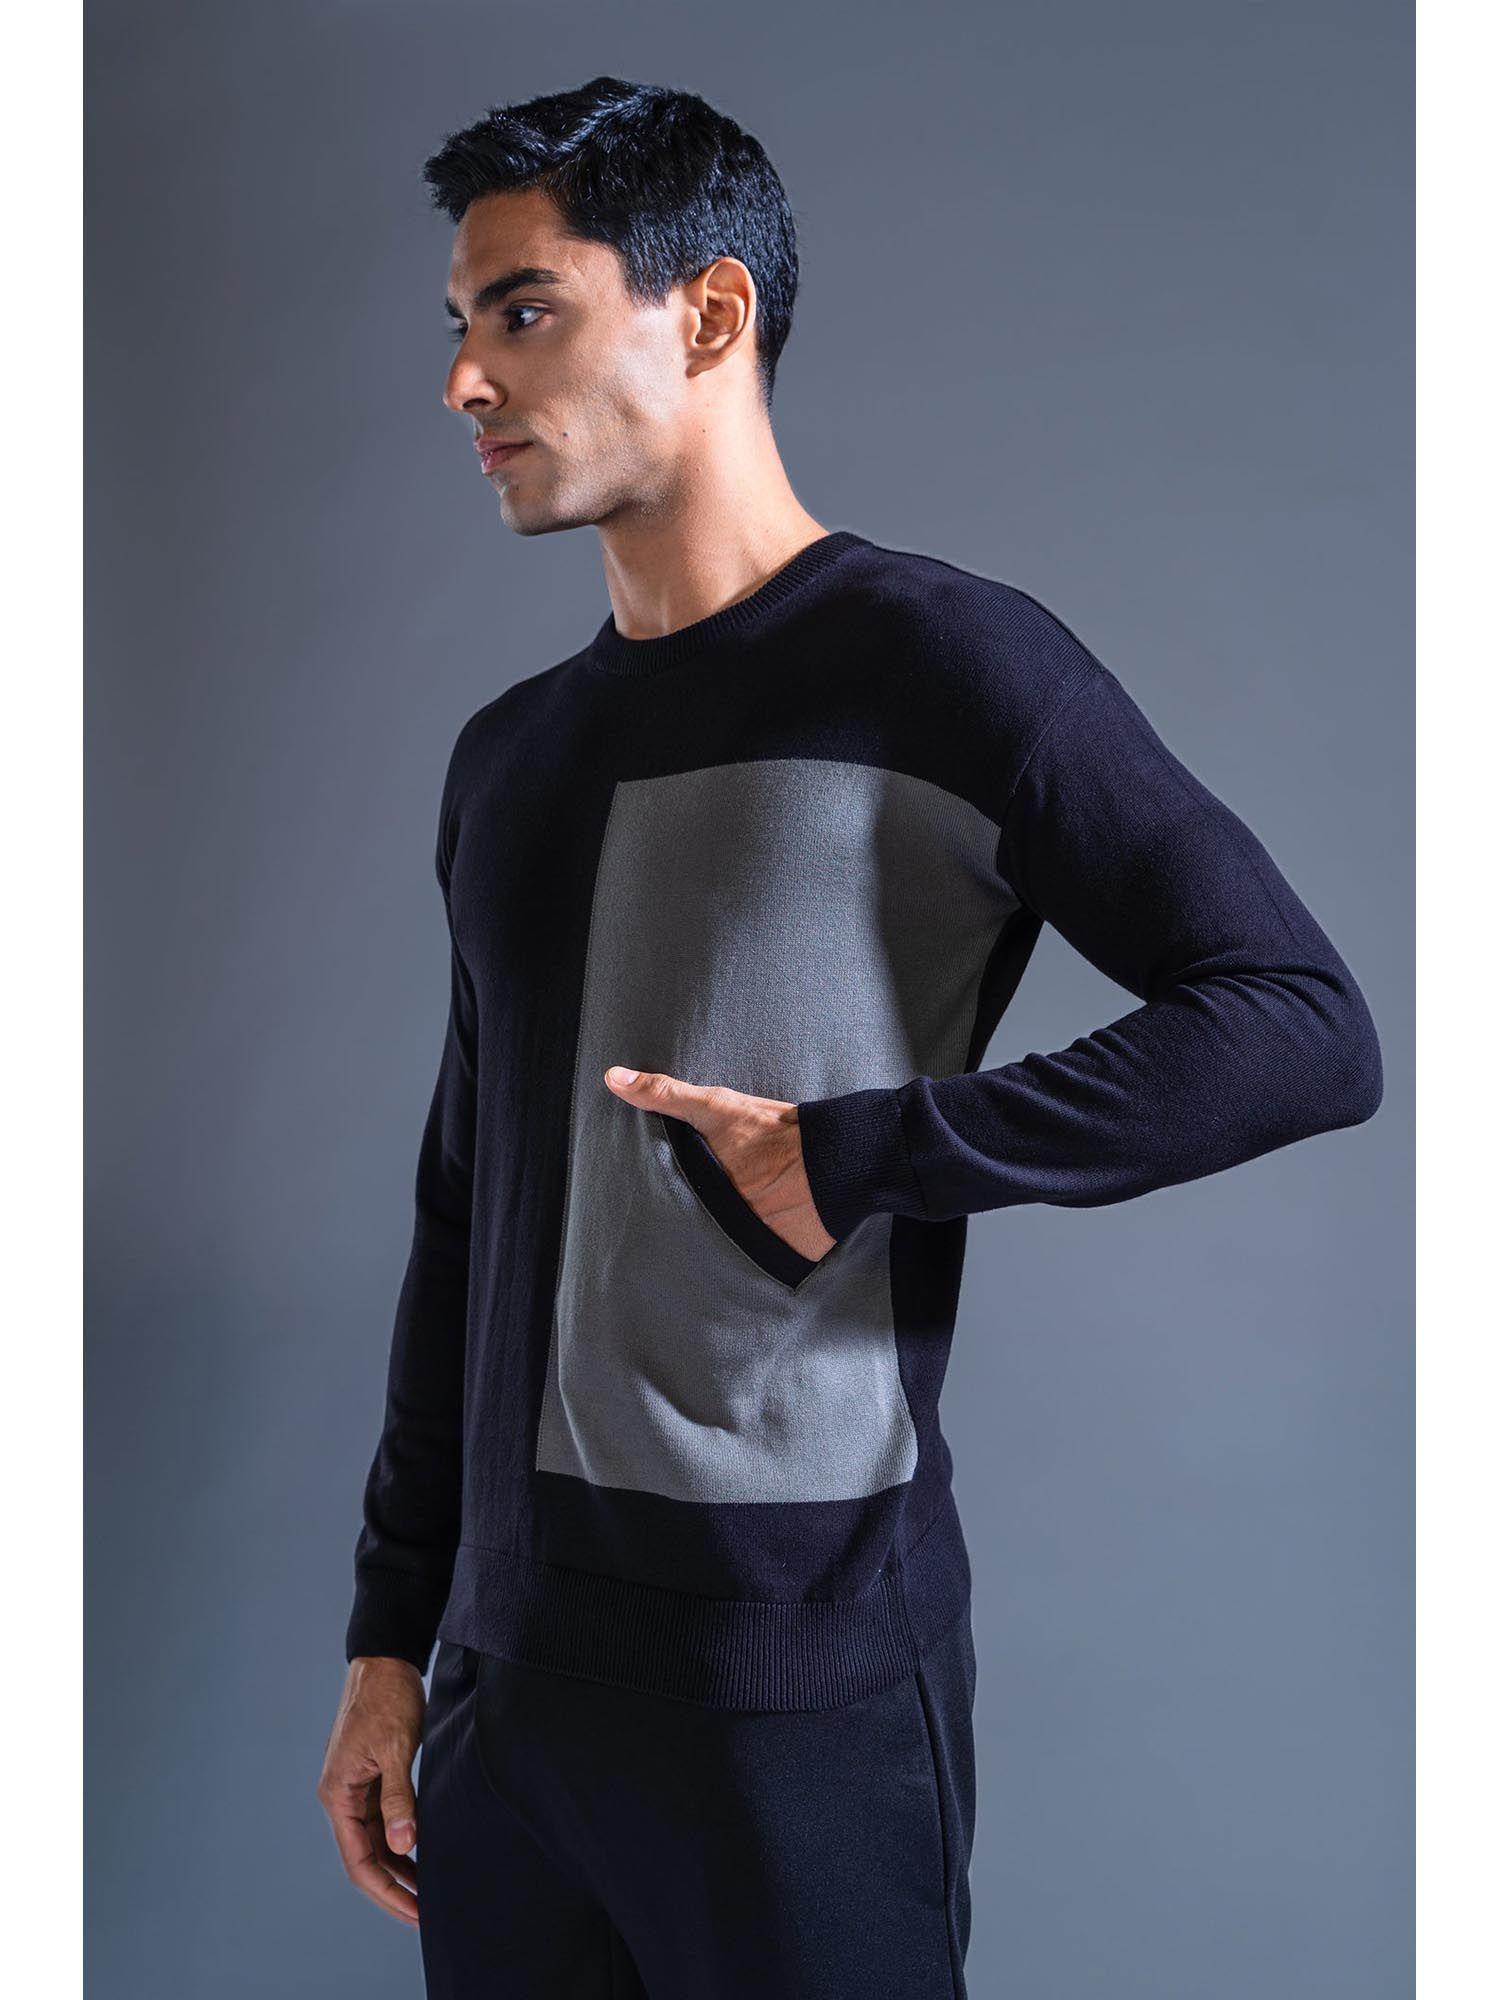 black cotton knit sweater asymmetrical pocket